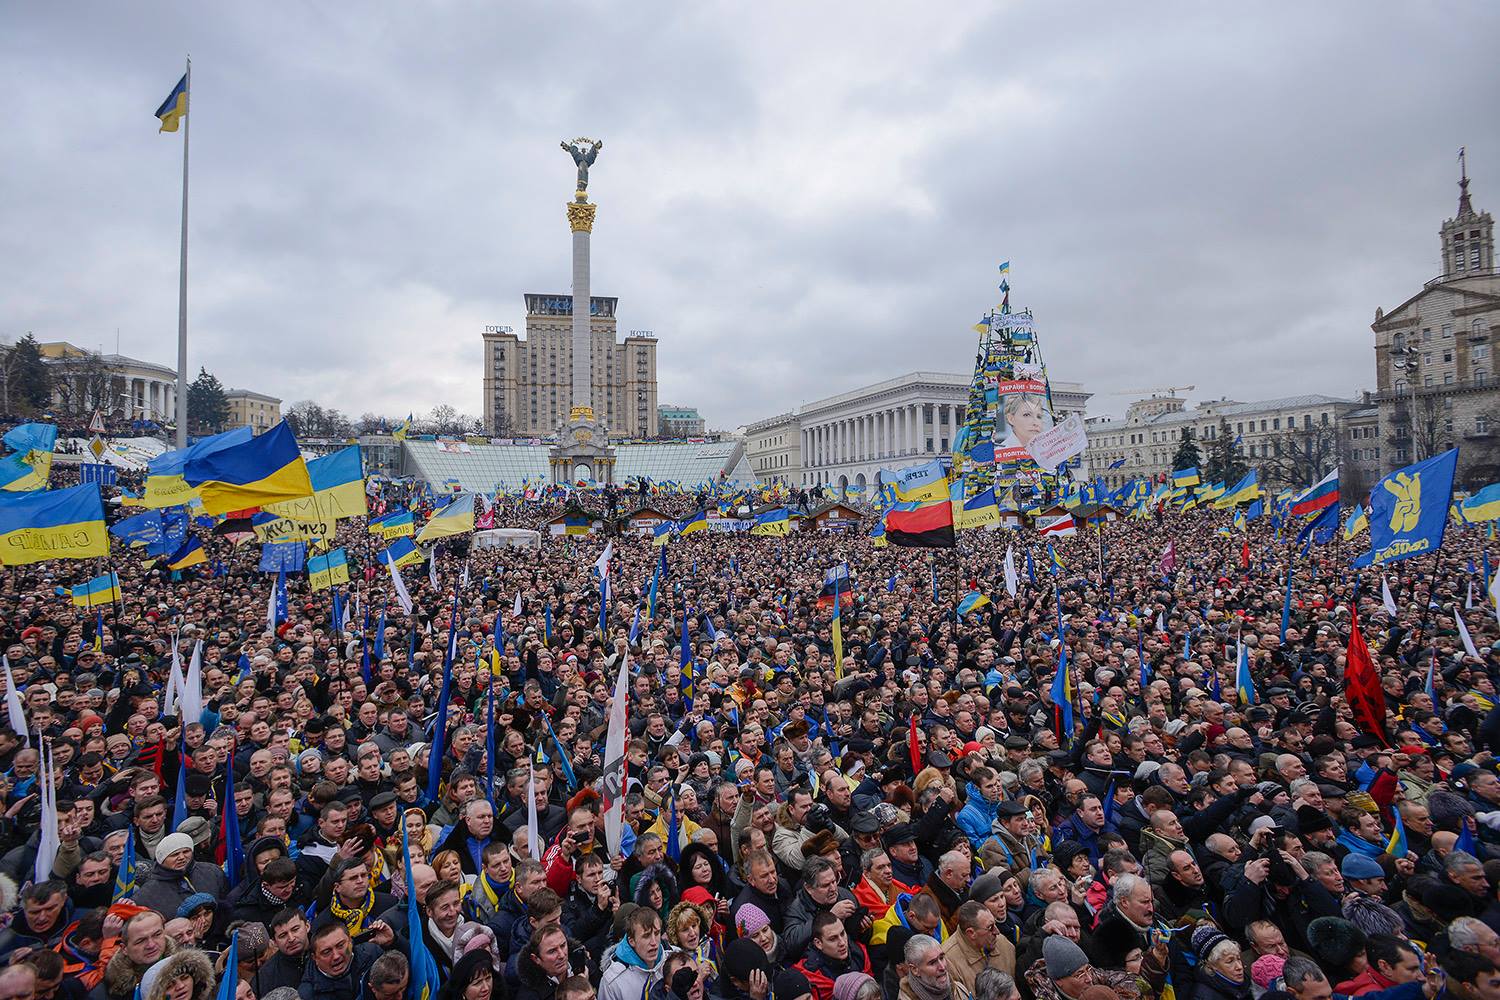 Рада признала Майдан одним из важнейших событий для Украины. Что это значит?